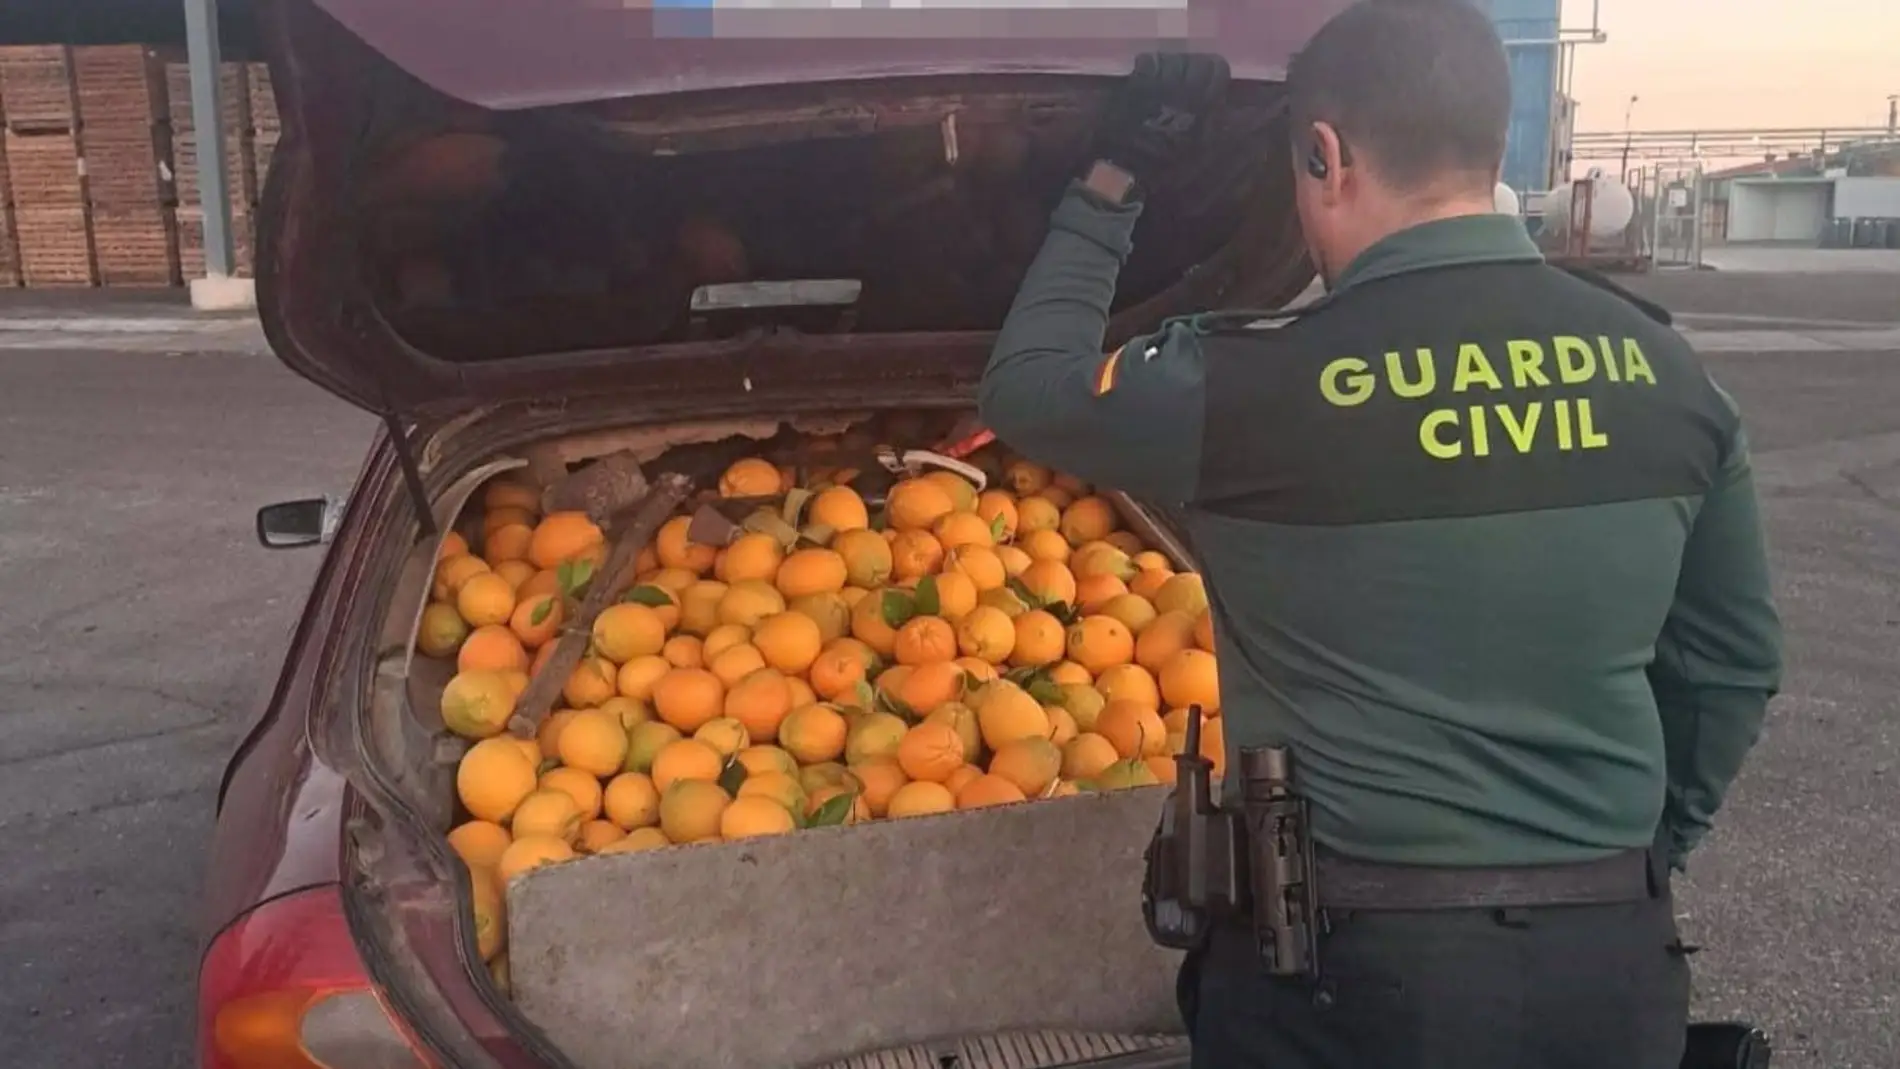 Recuperados más de 4.000 kilos de naranjas robadas y ocho detenidos por su sustracción